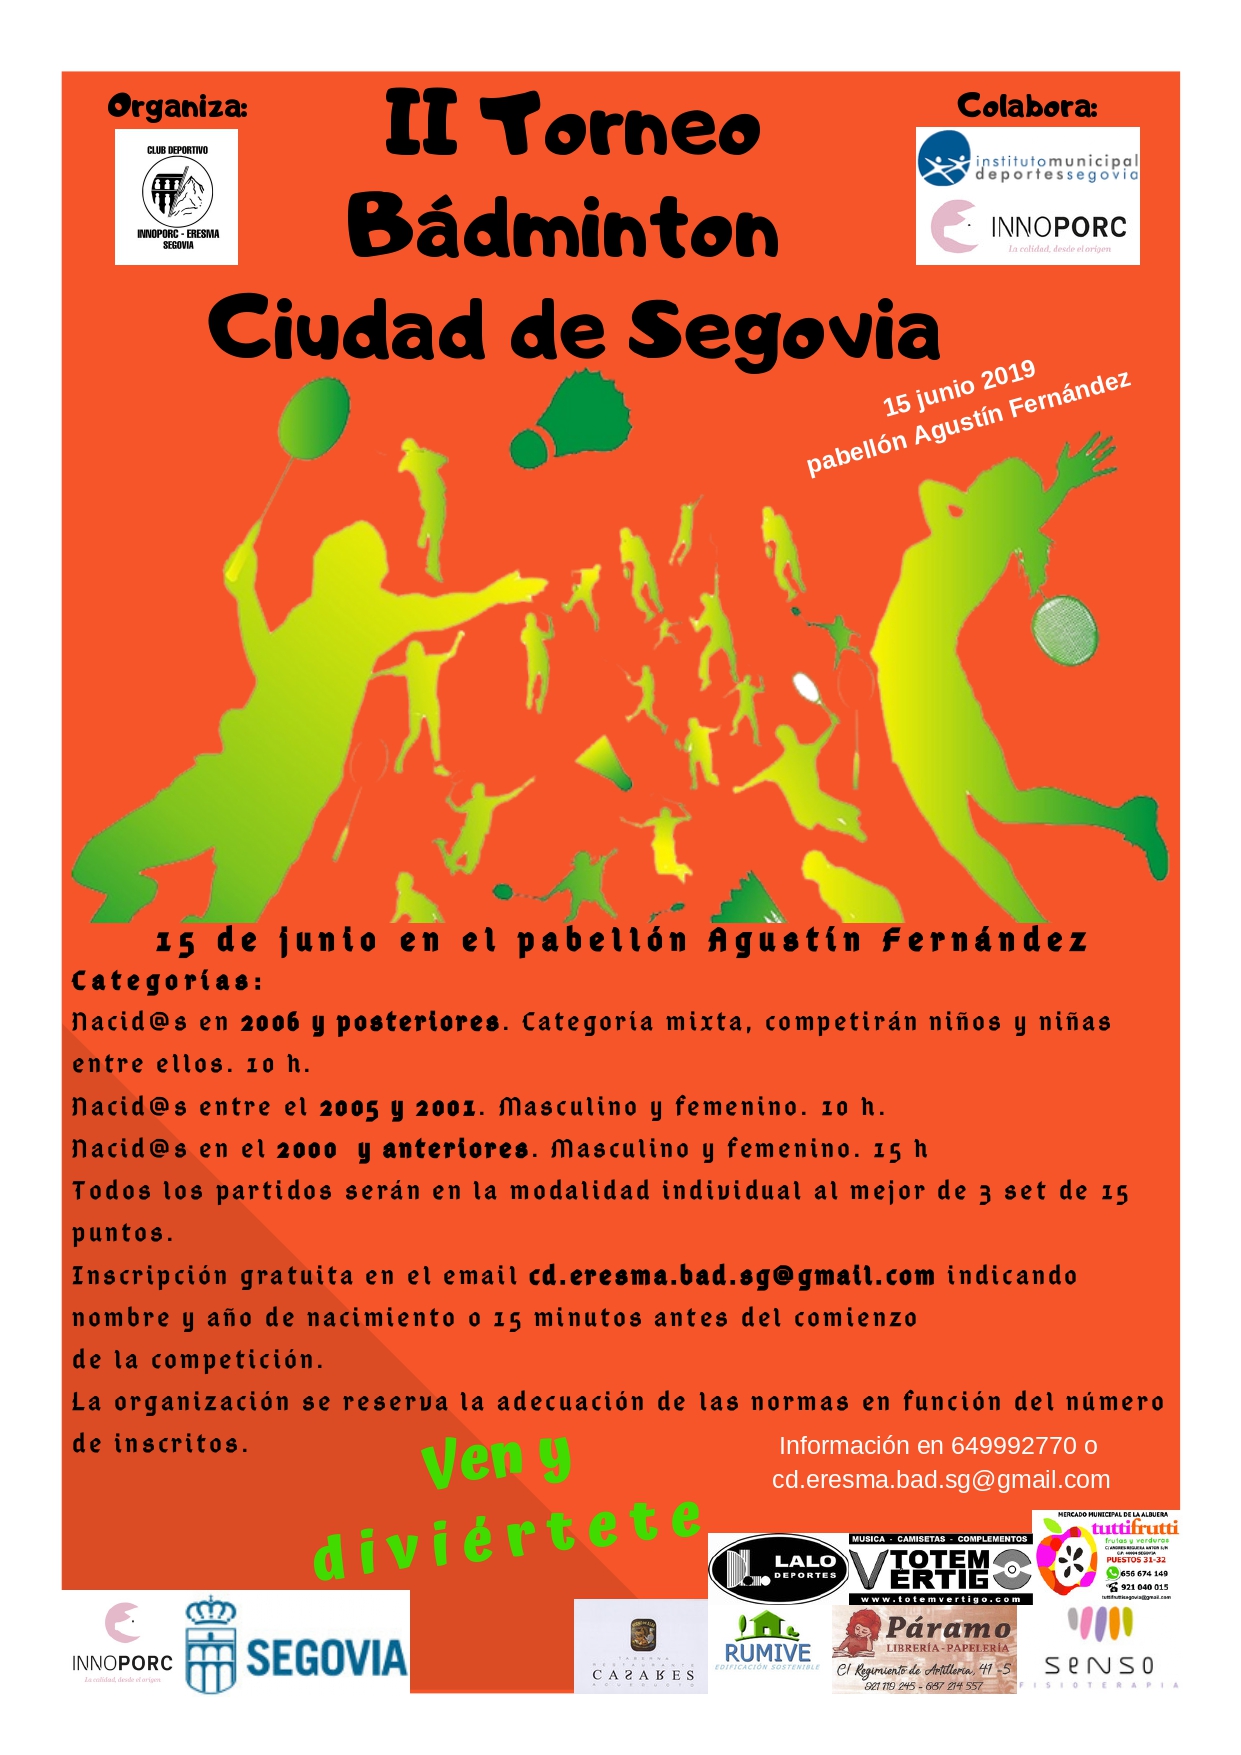 Ferias y Fiestas 2019: II Torneo de Bádminton “Ciudad de Segovia”